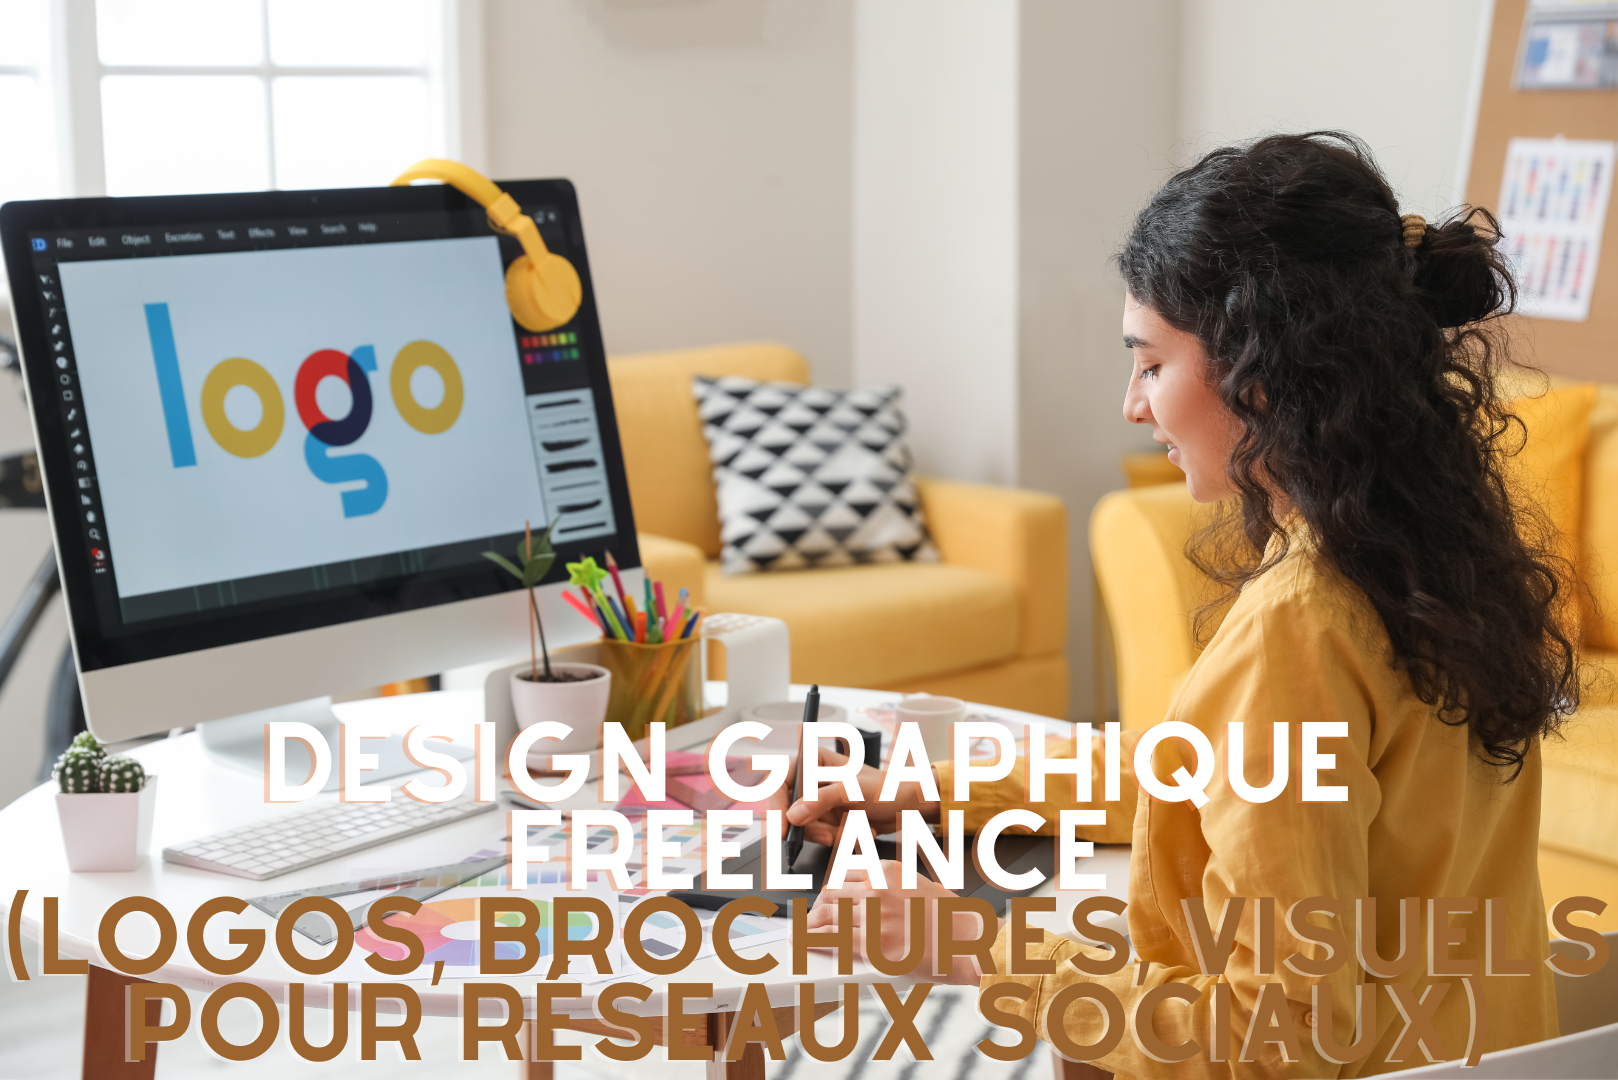 Design graphique freelance (logos, brochures, visuels pour réseaux sociaux)